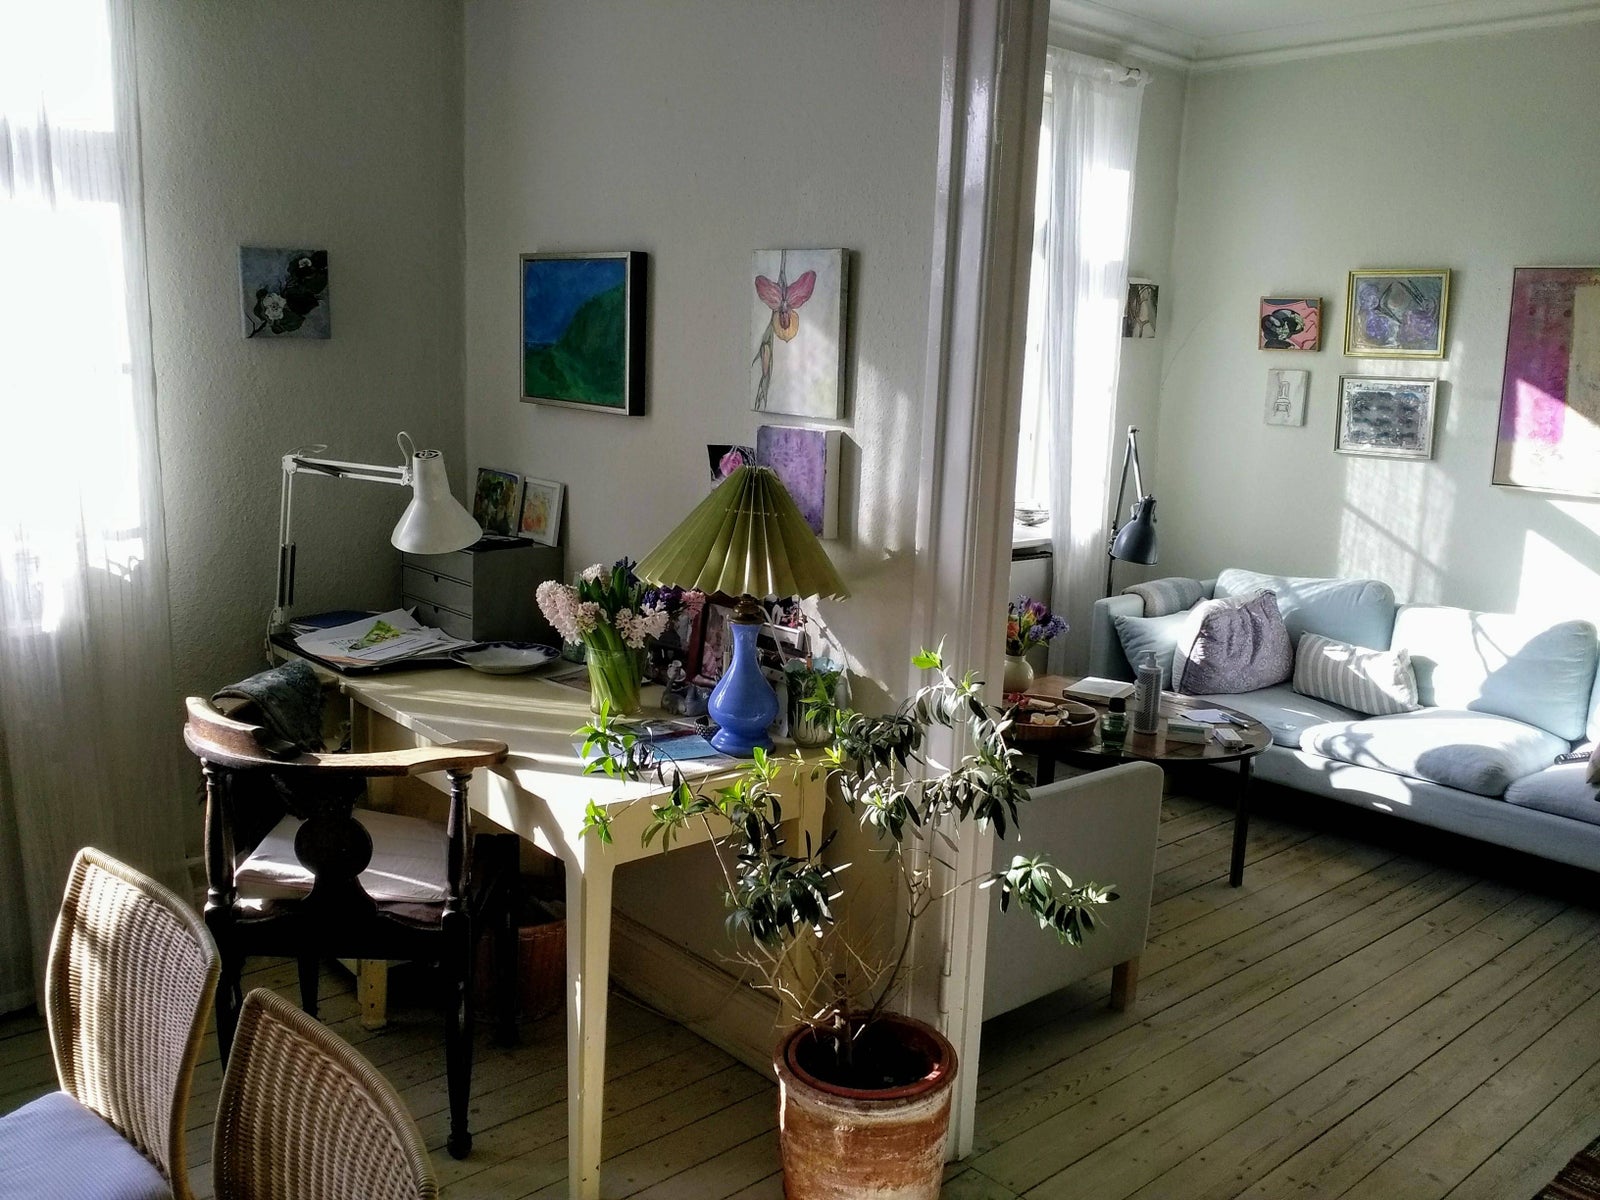 Christianshavn, lejlighed udlejes i juni og juli.